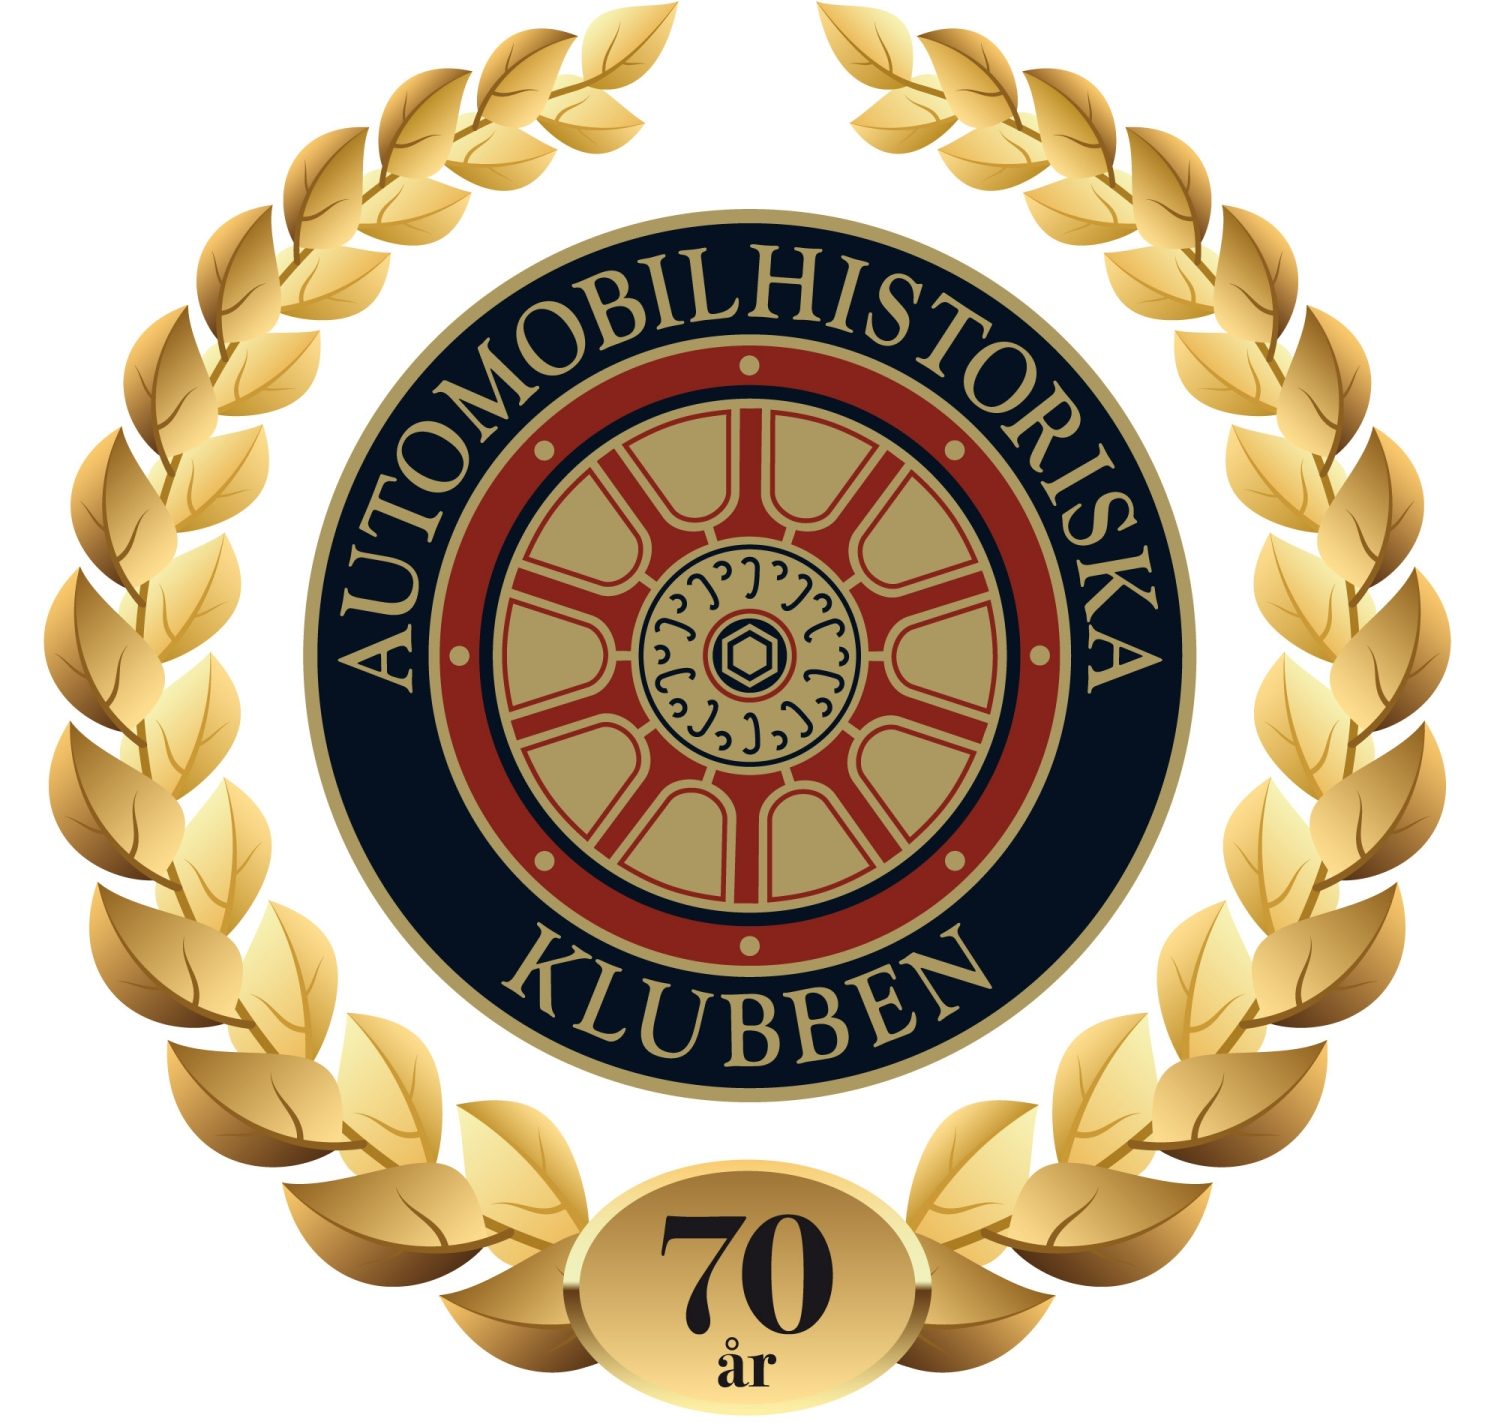 Sveriges första och äldsta veteranbilklubb, bildad 1950